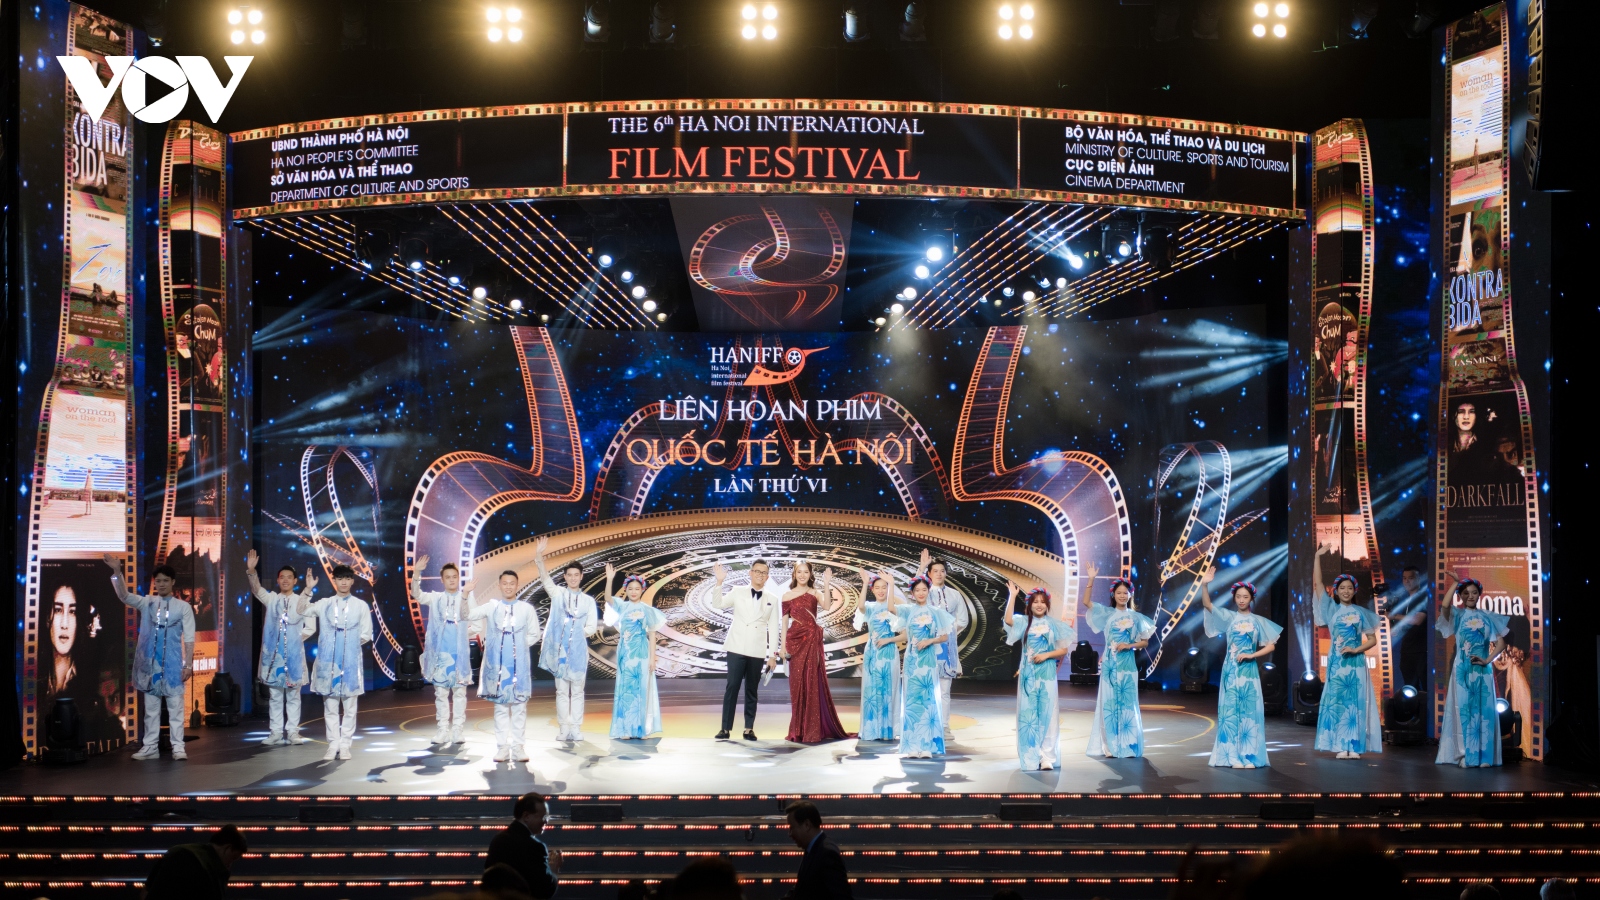 Việt Nam đoạt giải phim ngắn xuất sắc tại Liên hoan phim quốc tế Hà Nội lần thứ 6